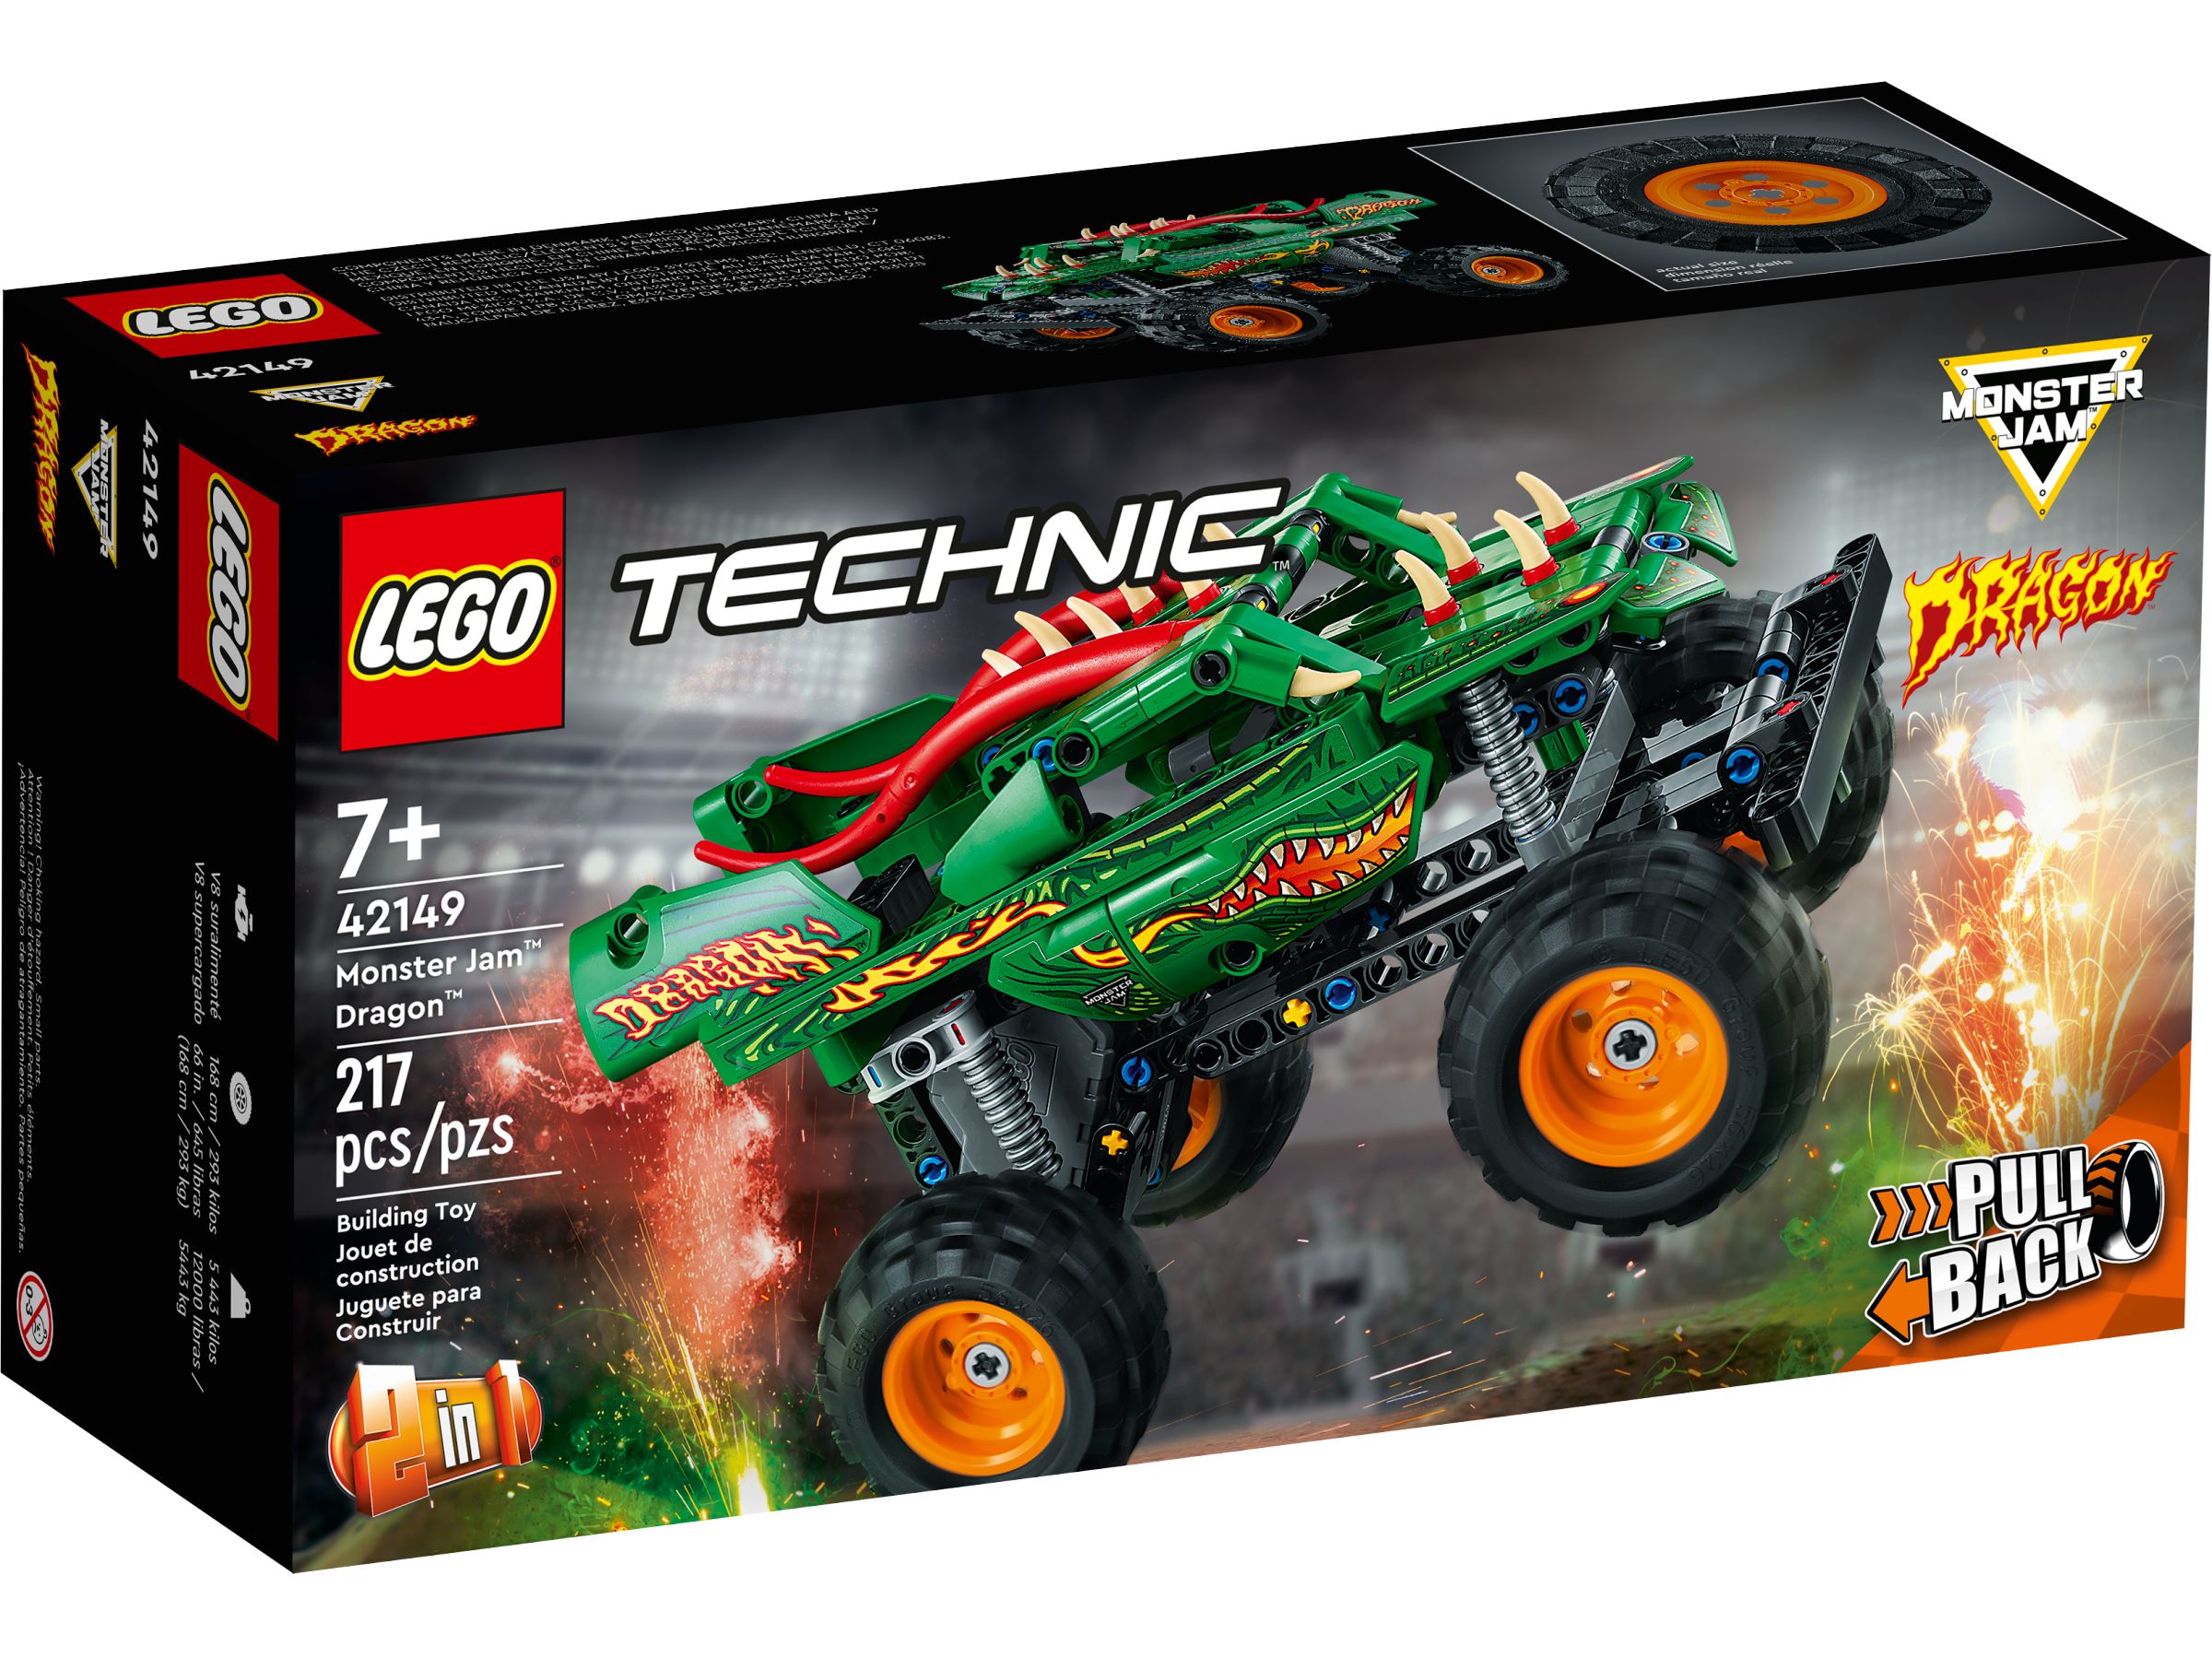 LEGO Technic 42149 Monster Jam™ Dragon™ LEGO_42149_alt1.jpg